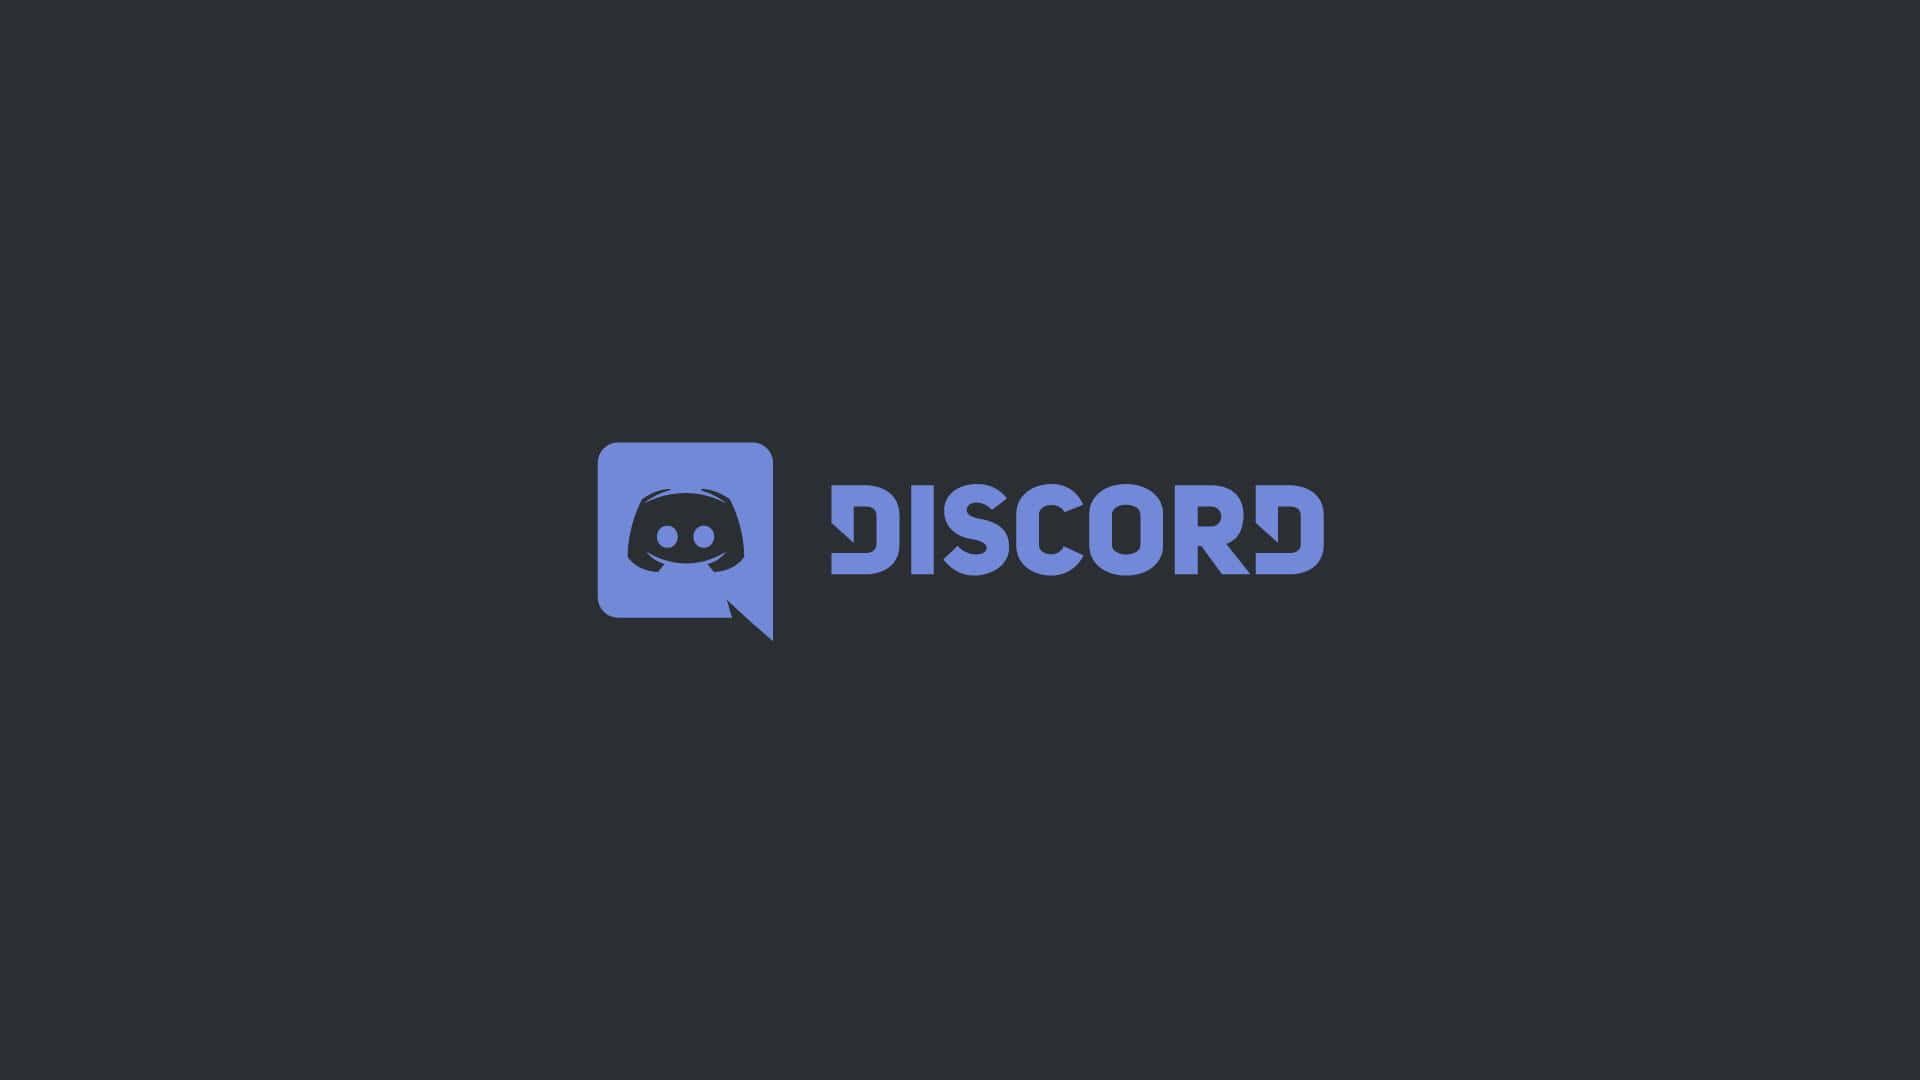 Logotipode Discord En Modo Oscuro Fondo de pantalla